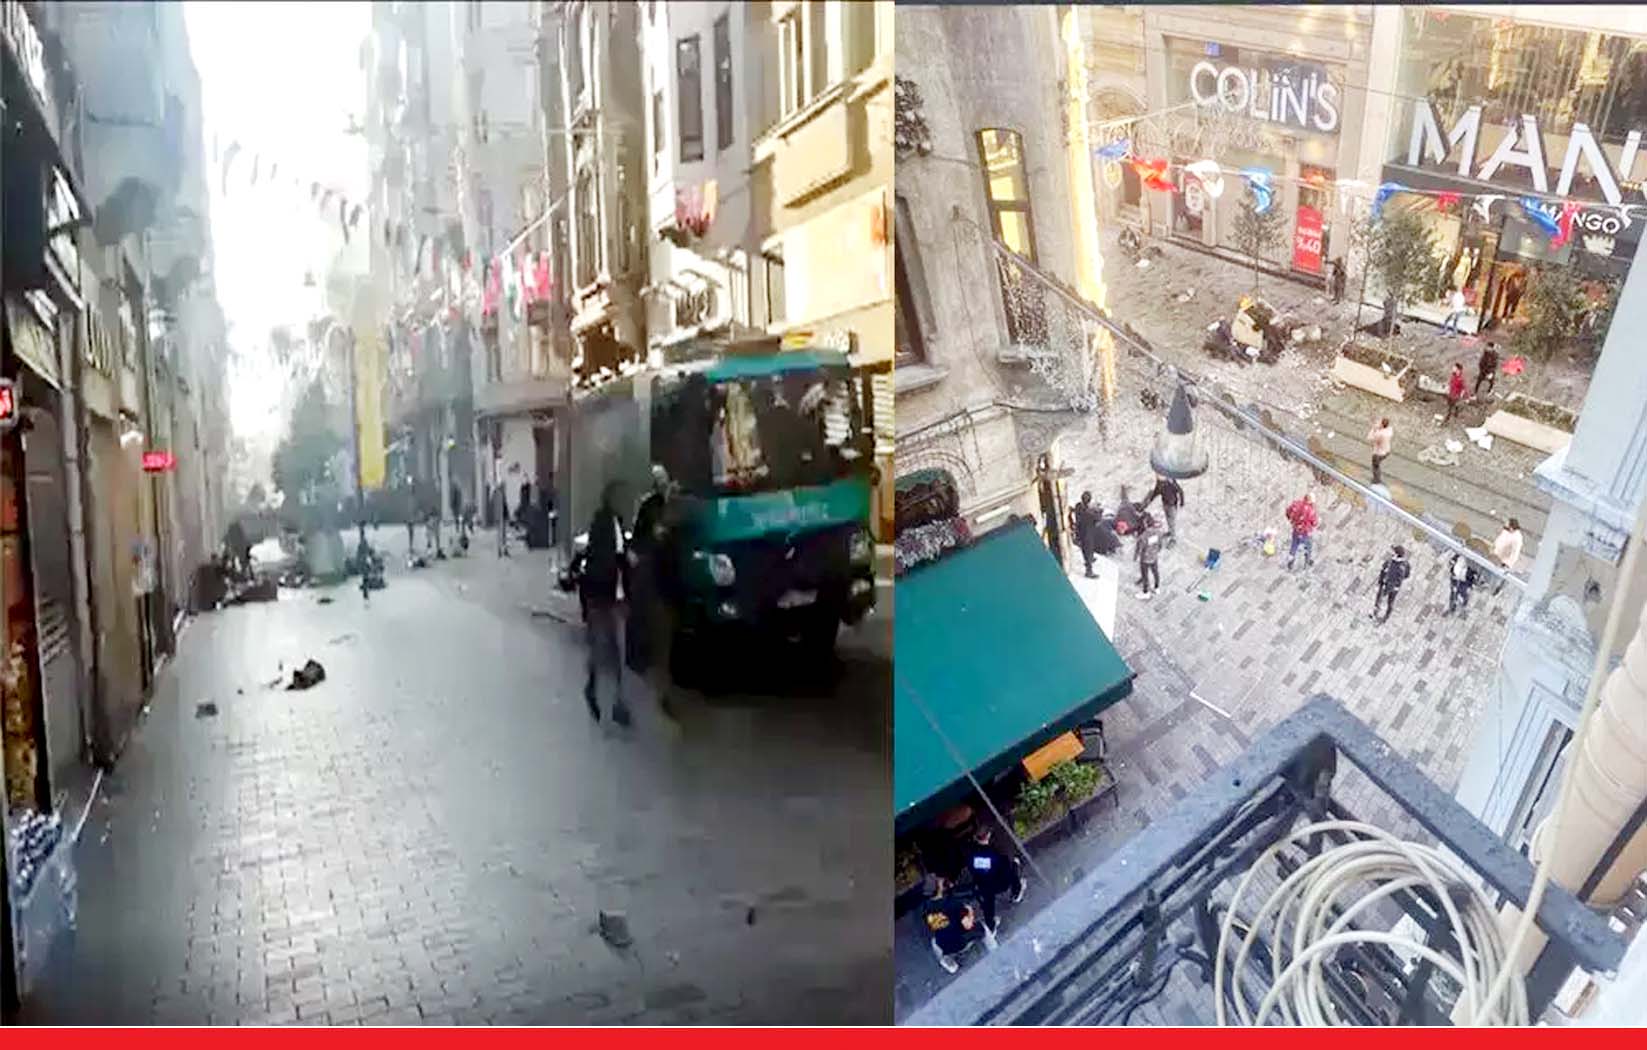 Istanbul Blast : तुर्की की राजधानी इस्तांबुल में ब्लास्ट, 6 की मौत, 53 से ज्यादा घायल